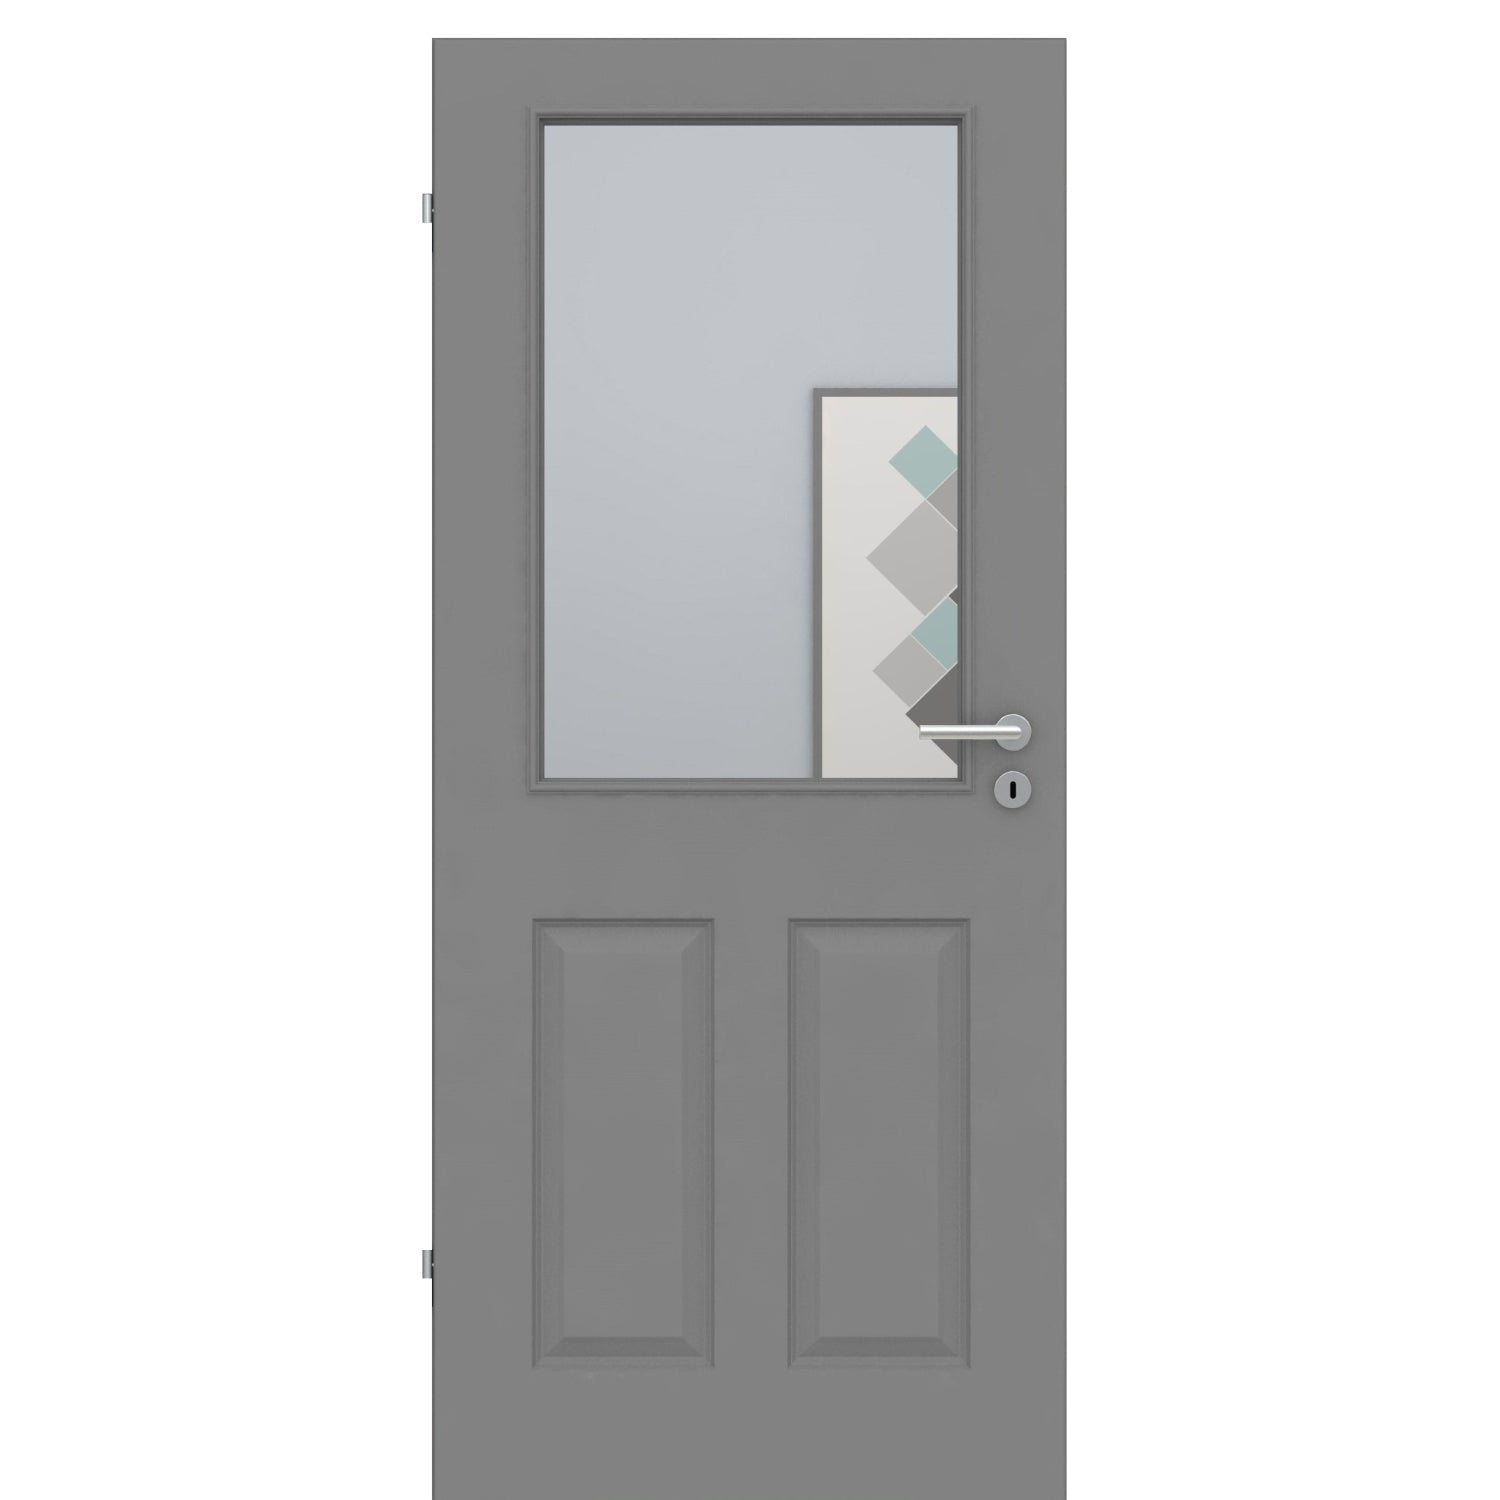 Zimmertür mit Lichtausschnitt grau 4 Kassetten Designkante - Modell Stiltür K47LA